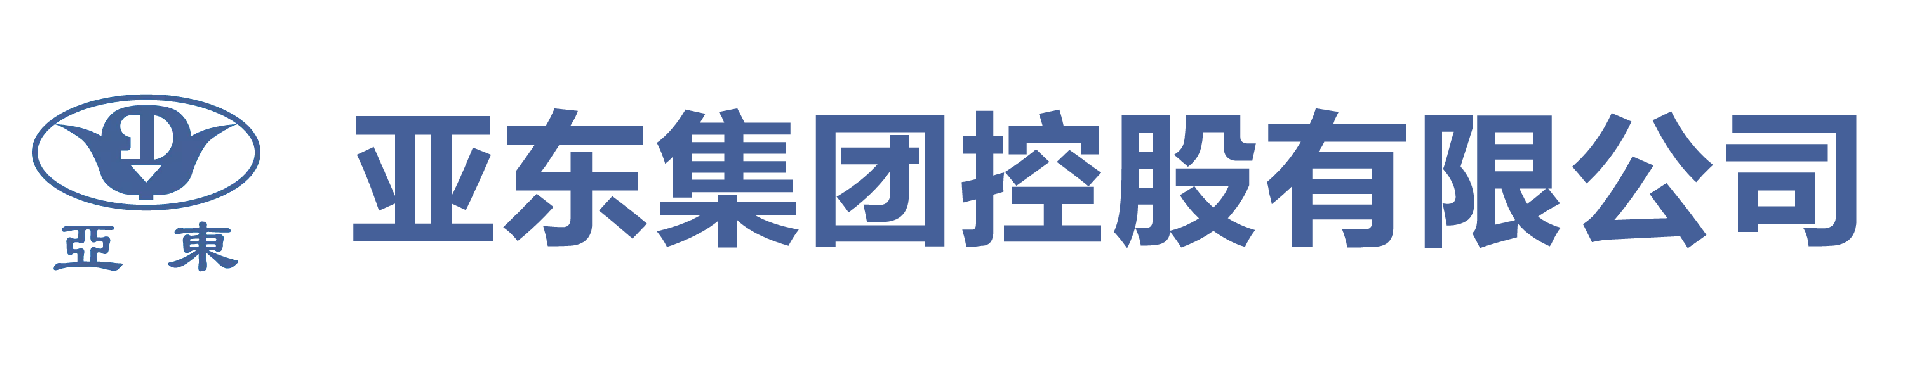 米乐平台(中国)科技有限公司官网